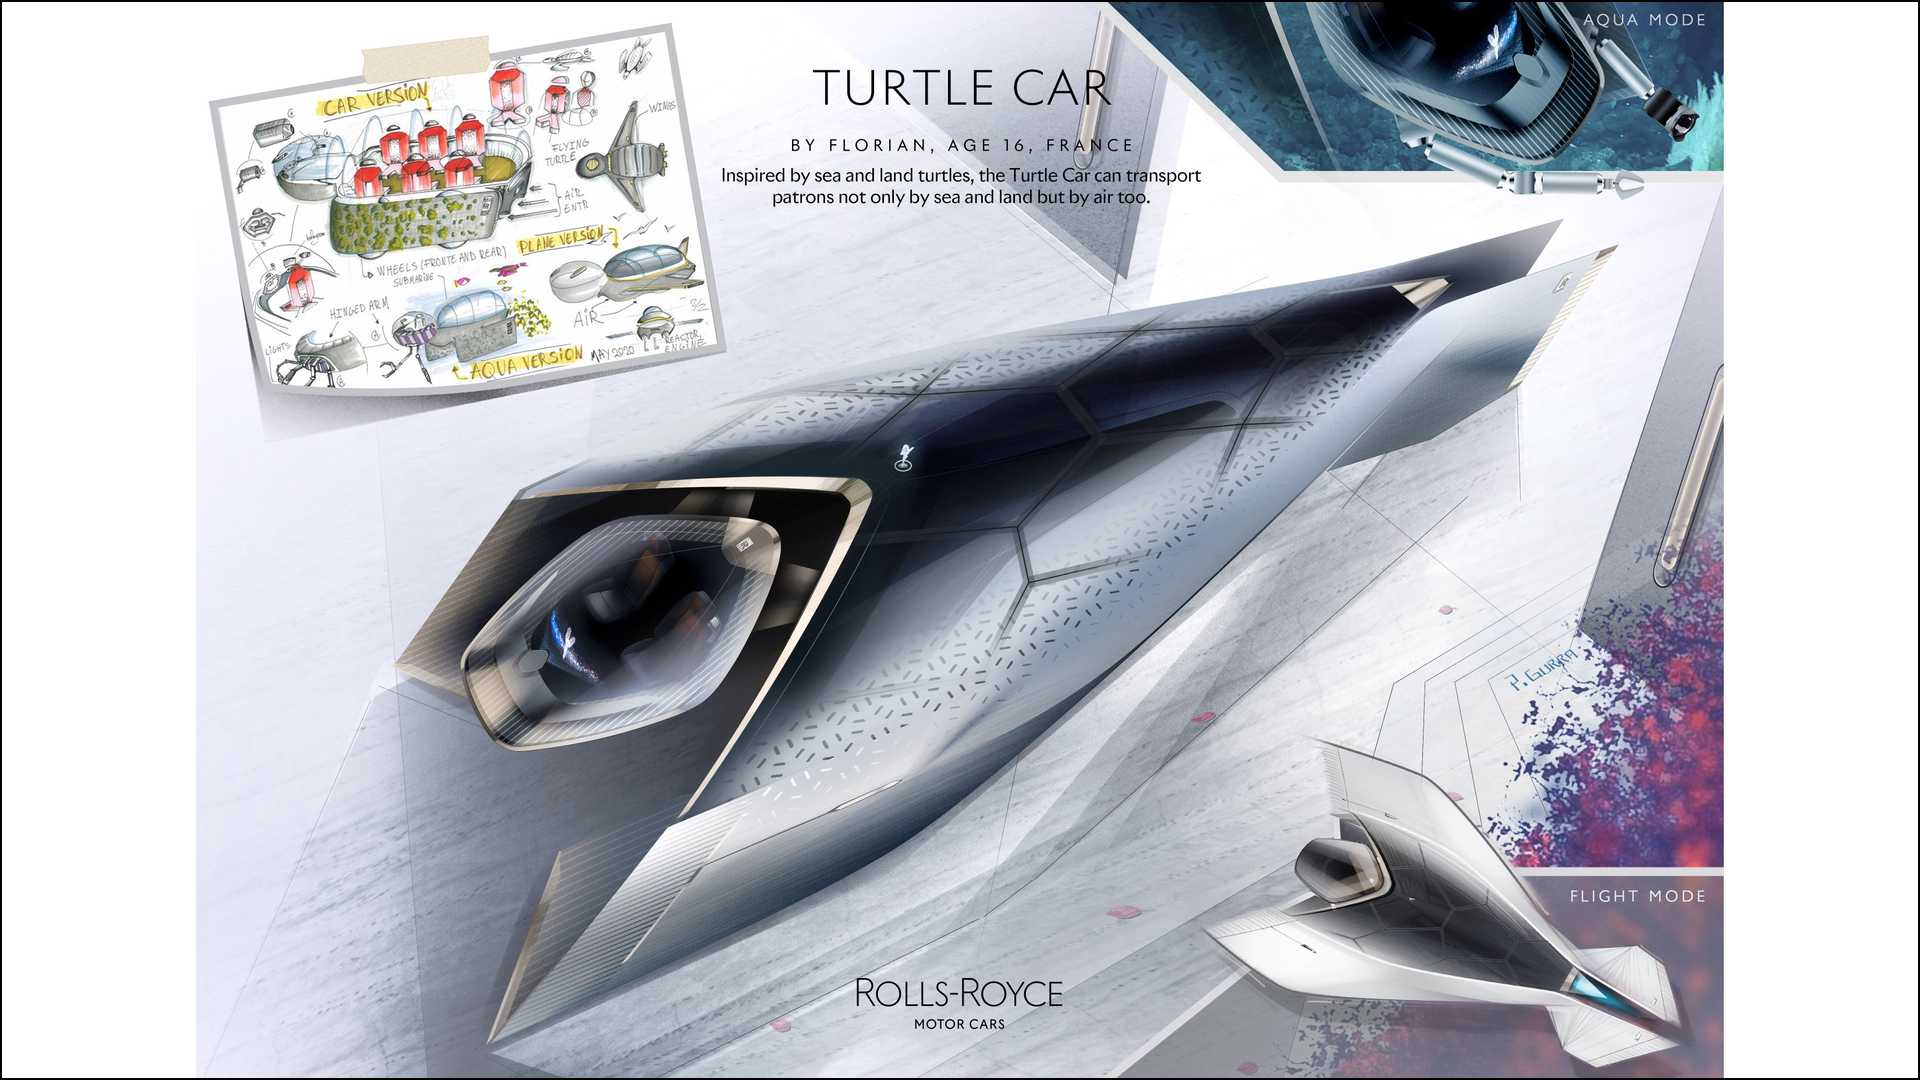 幻想《勞斯萊斯海龜汽車》—— 來自法國的 16 歲青年設計師 Florian。